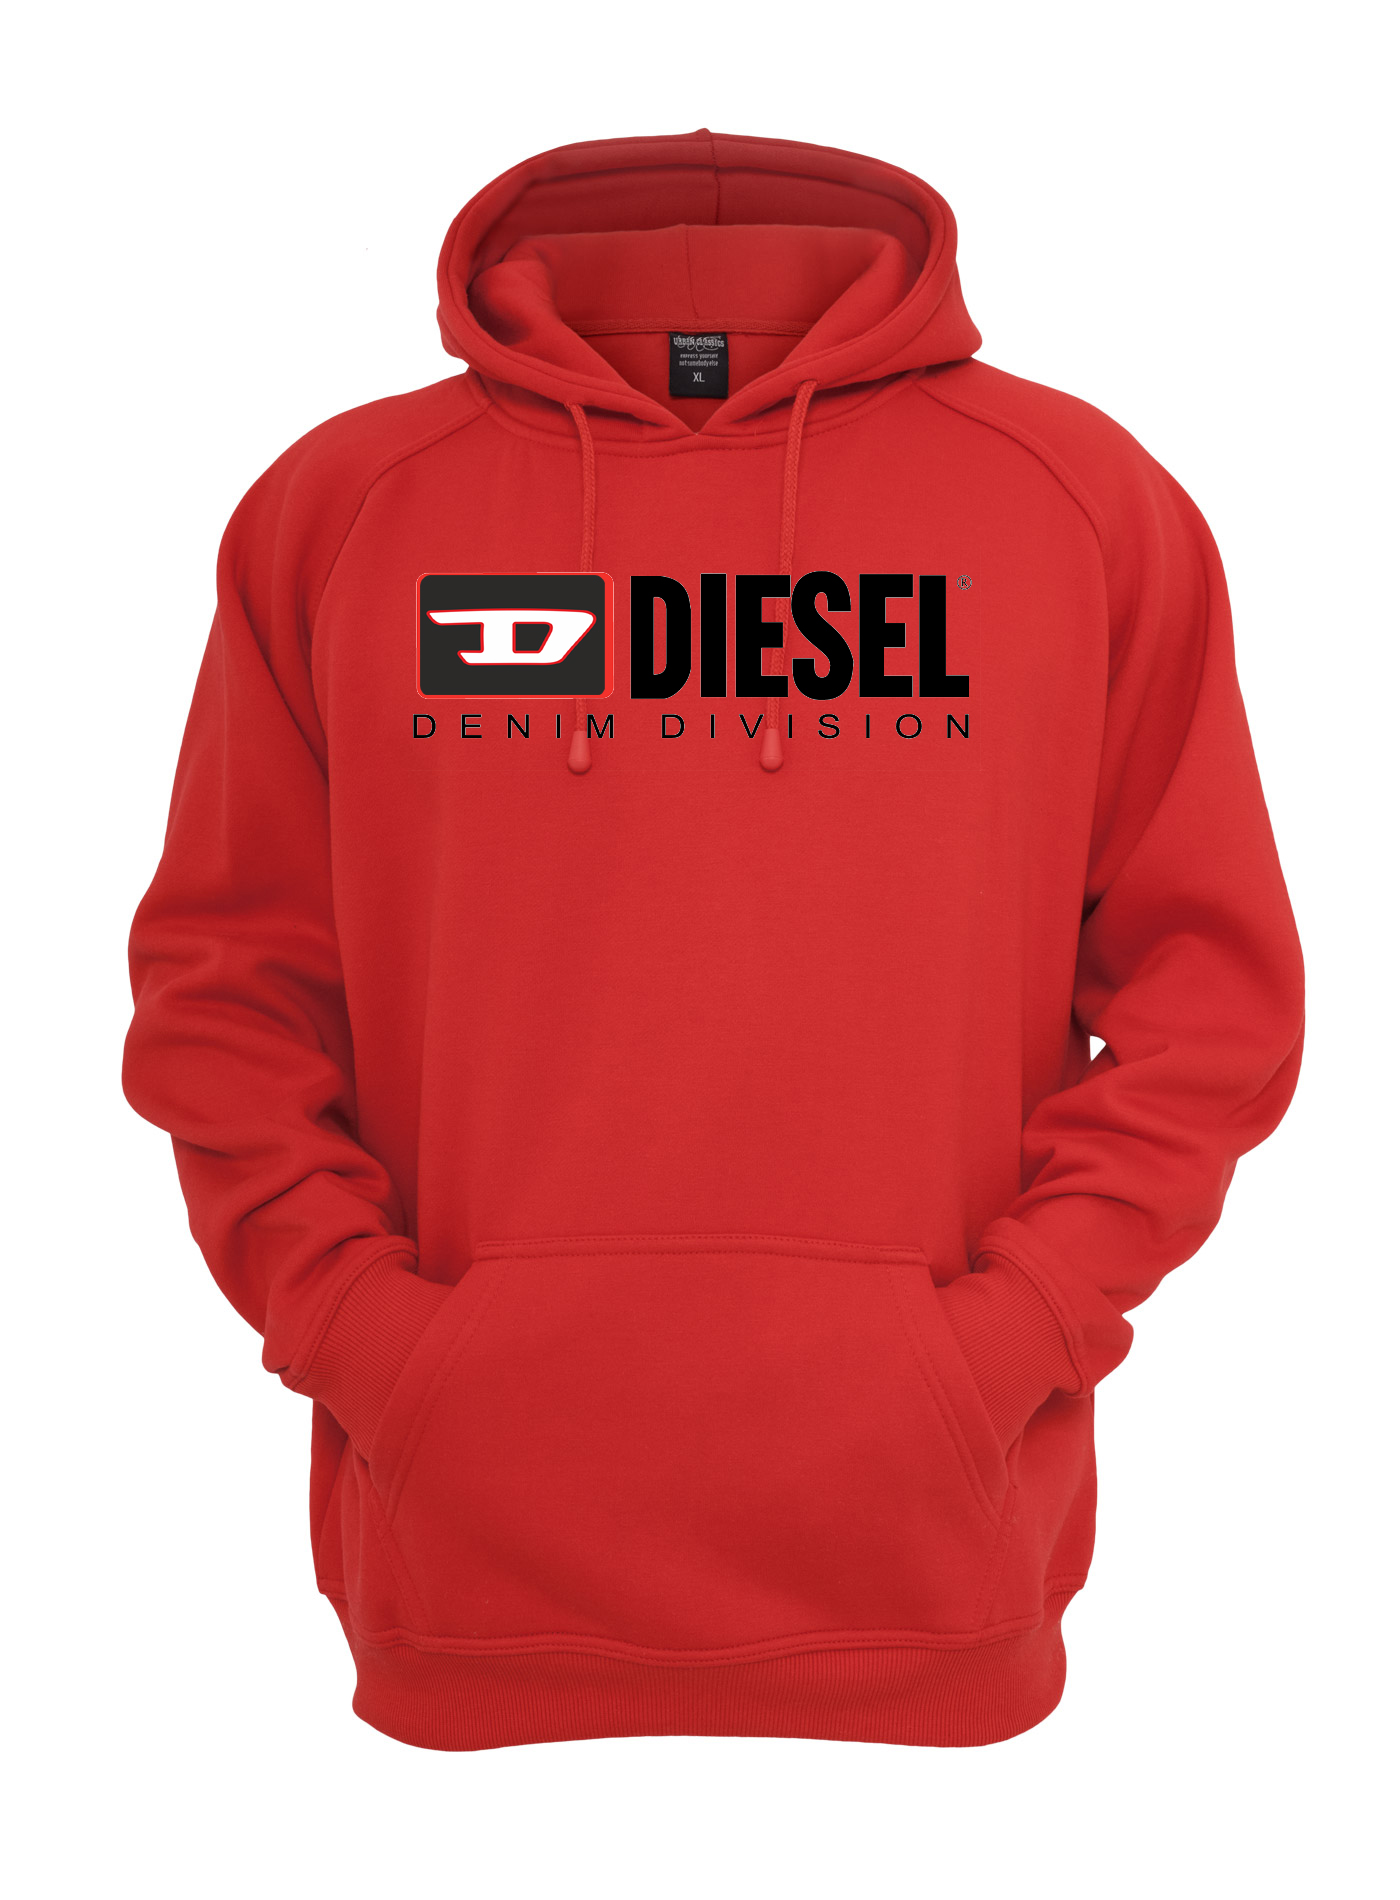 Diesel Denim Division Hoodie - Basic 